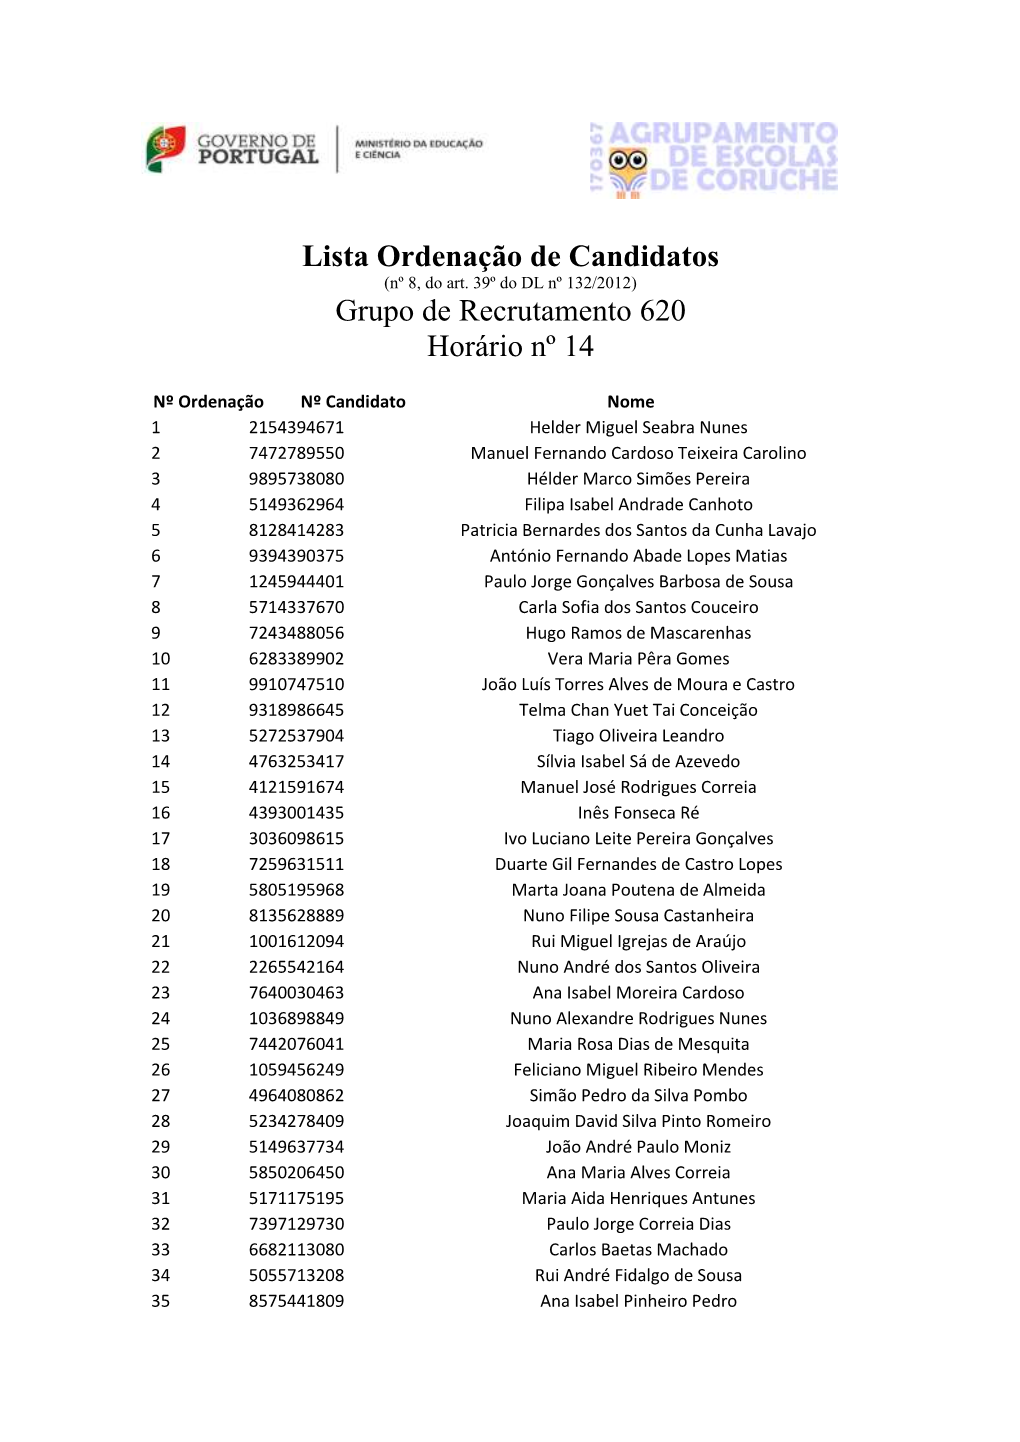 Lista Ordenação De Candidatos Grupo De Recrutamento 620